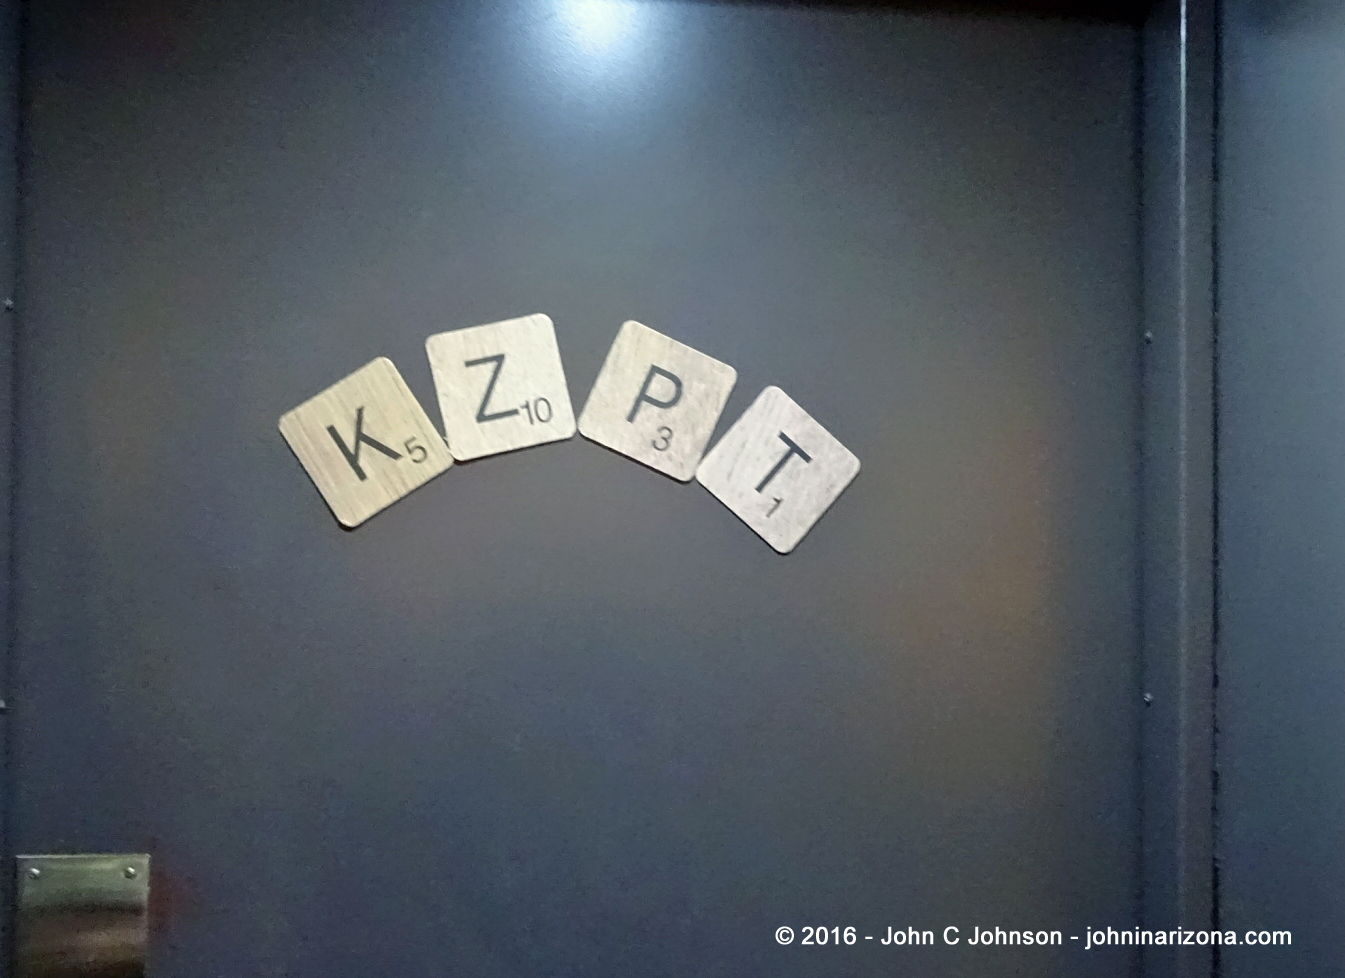 KZPT FM Radio Kansas City, Missouri